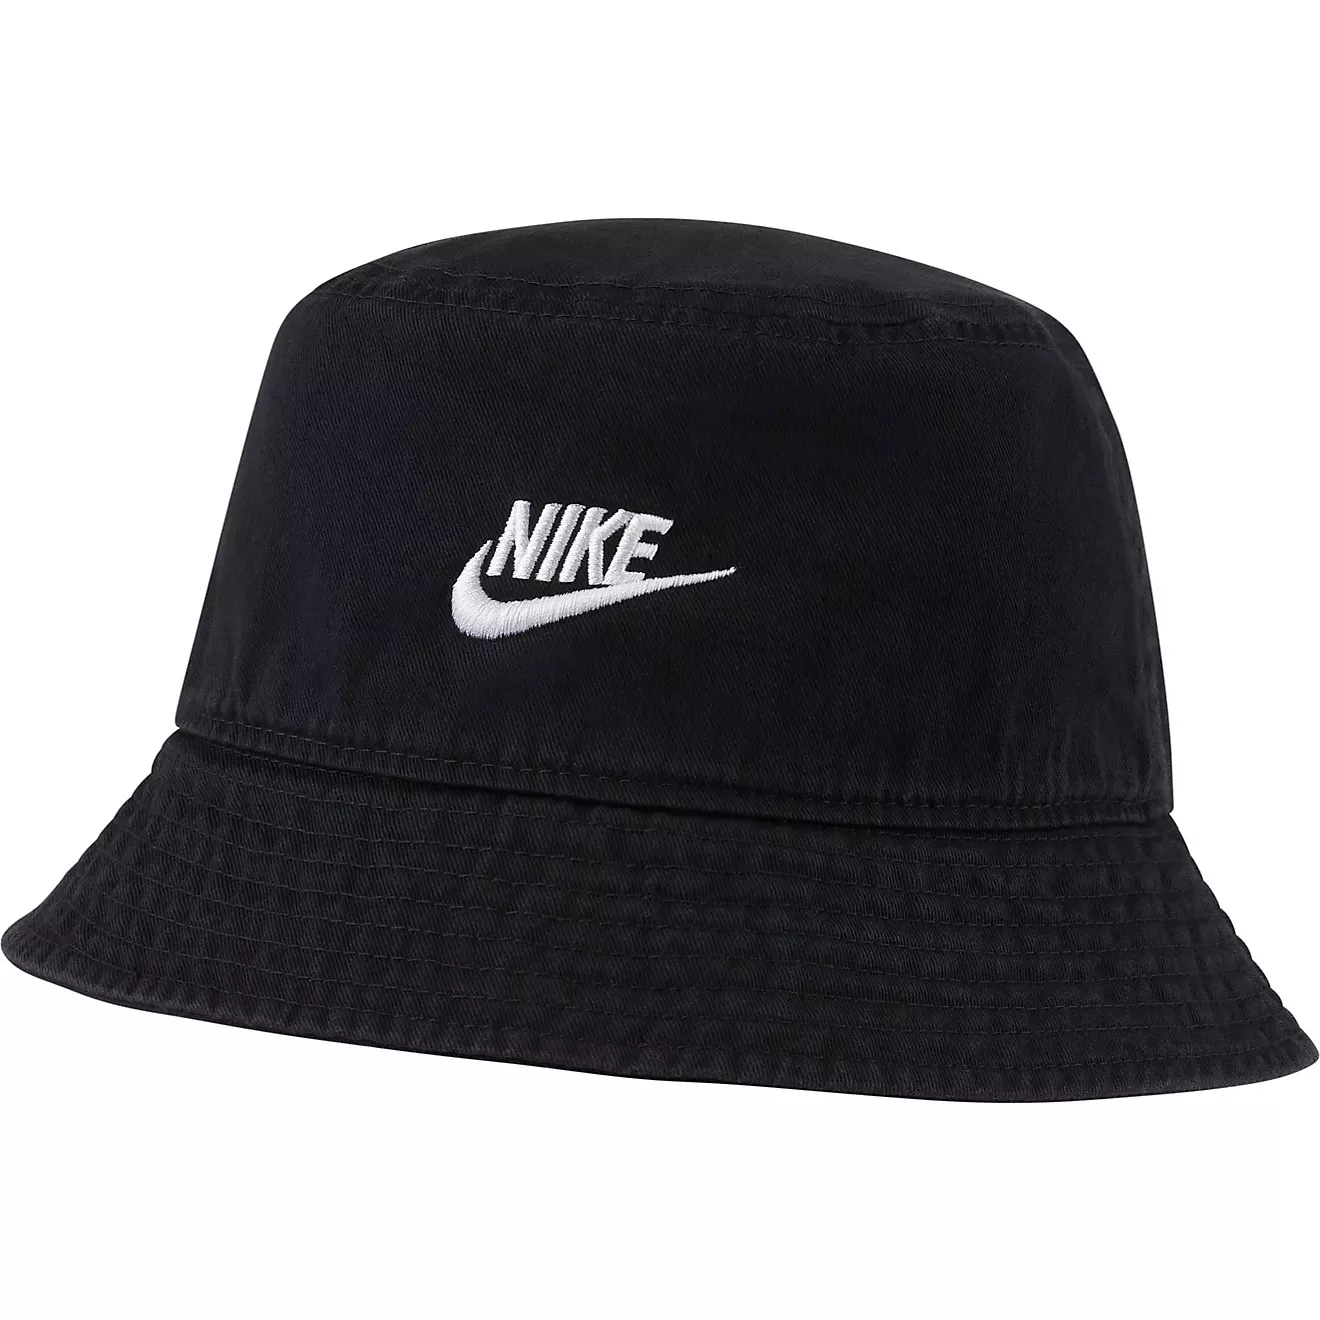 Nike NY Hats for Men